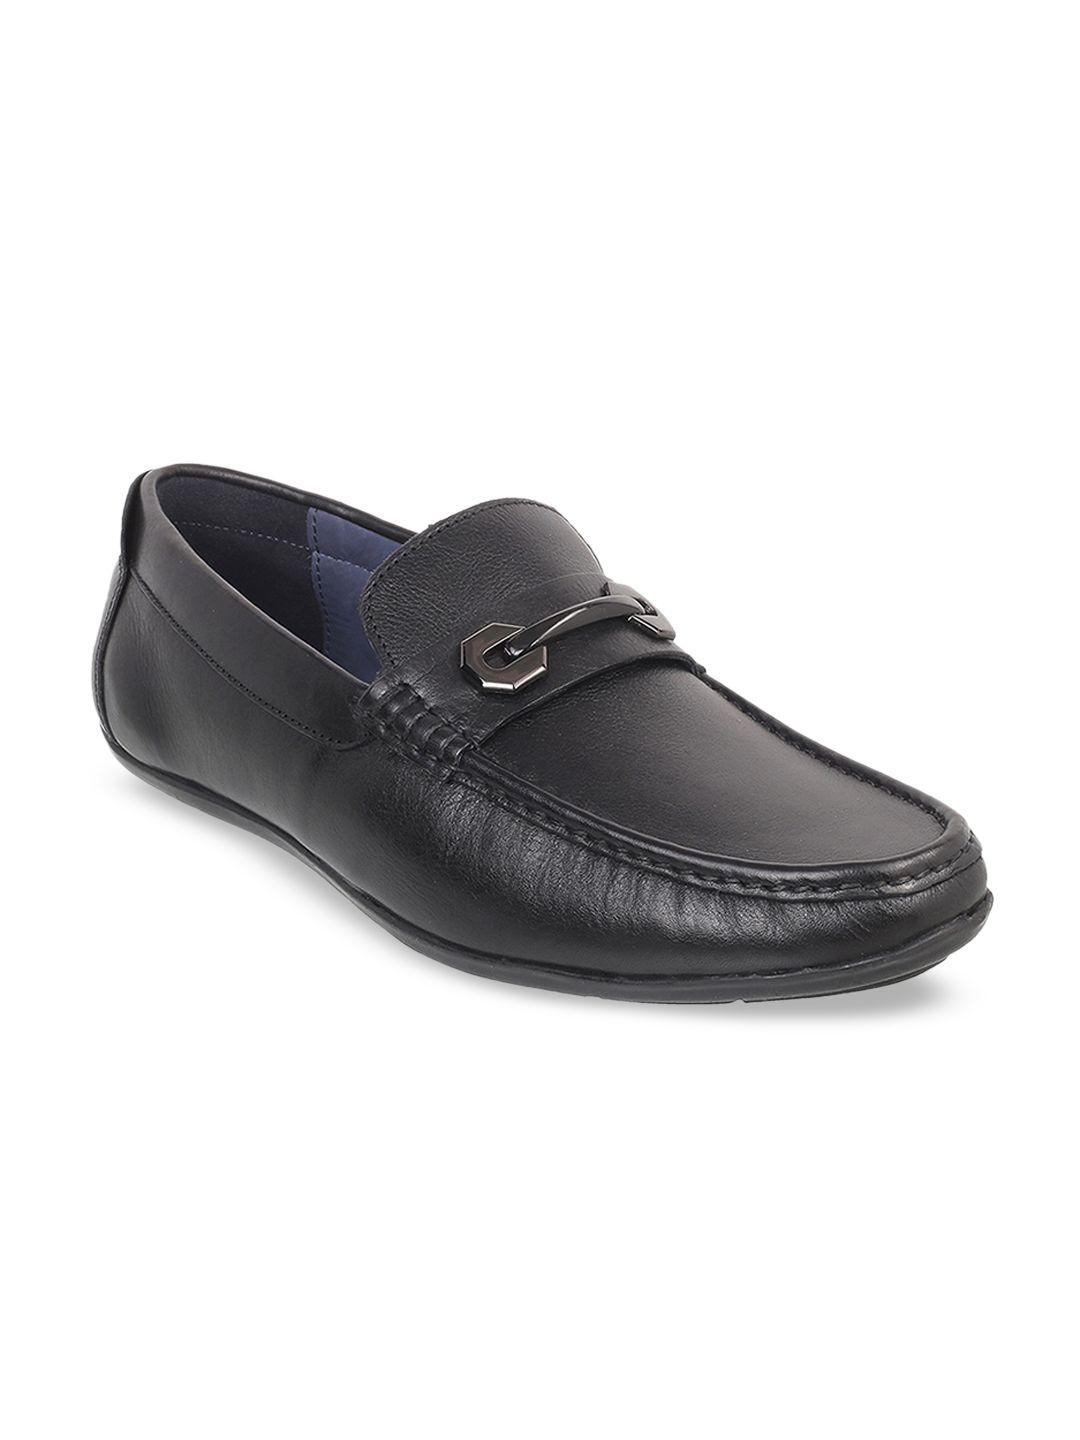 mochi-men-black-solid-leather-formal-horsebit-loafers